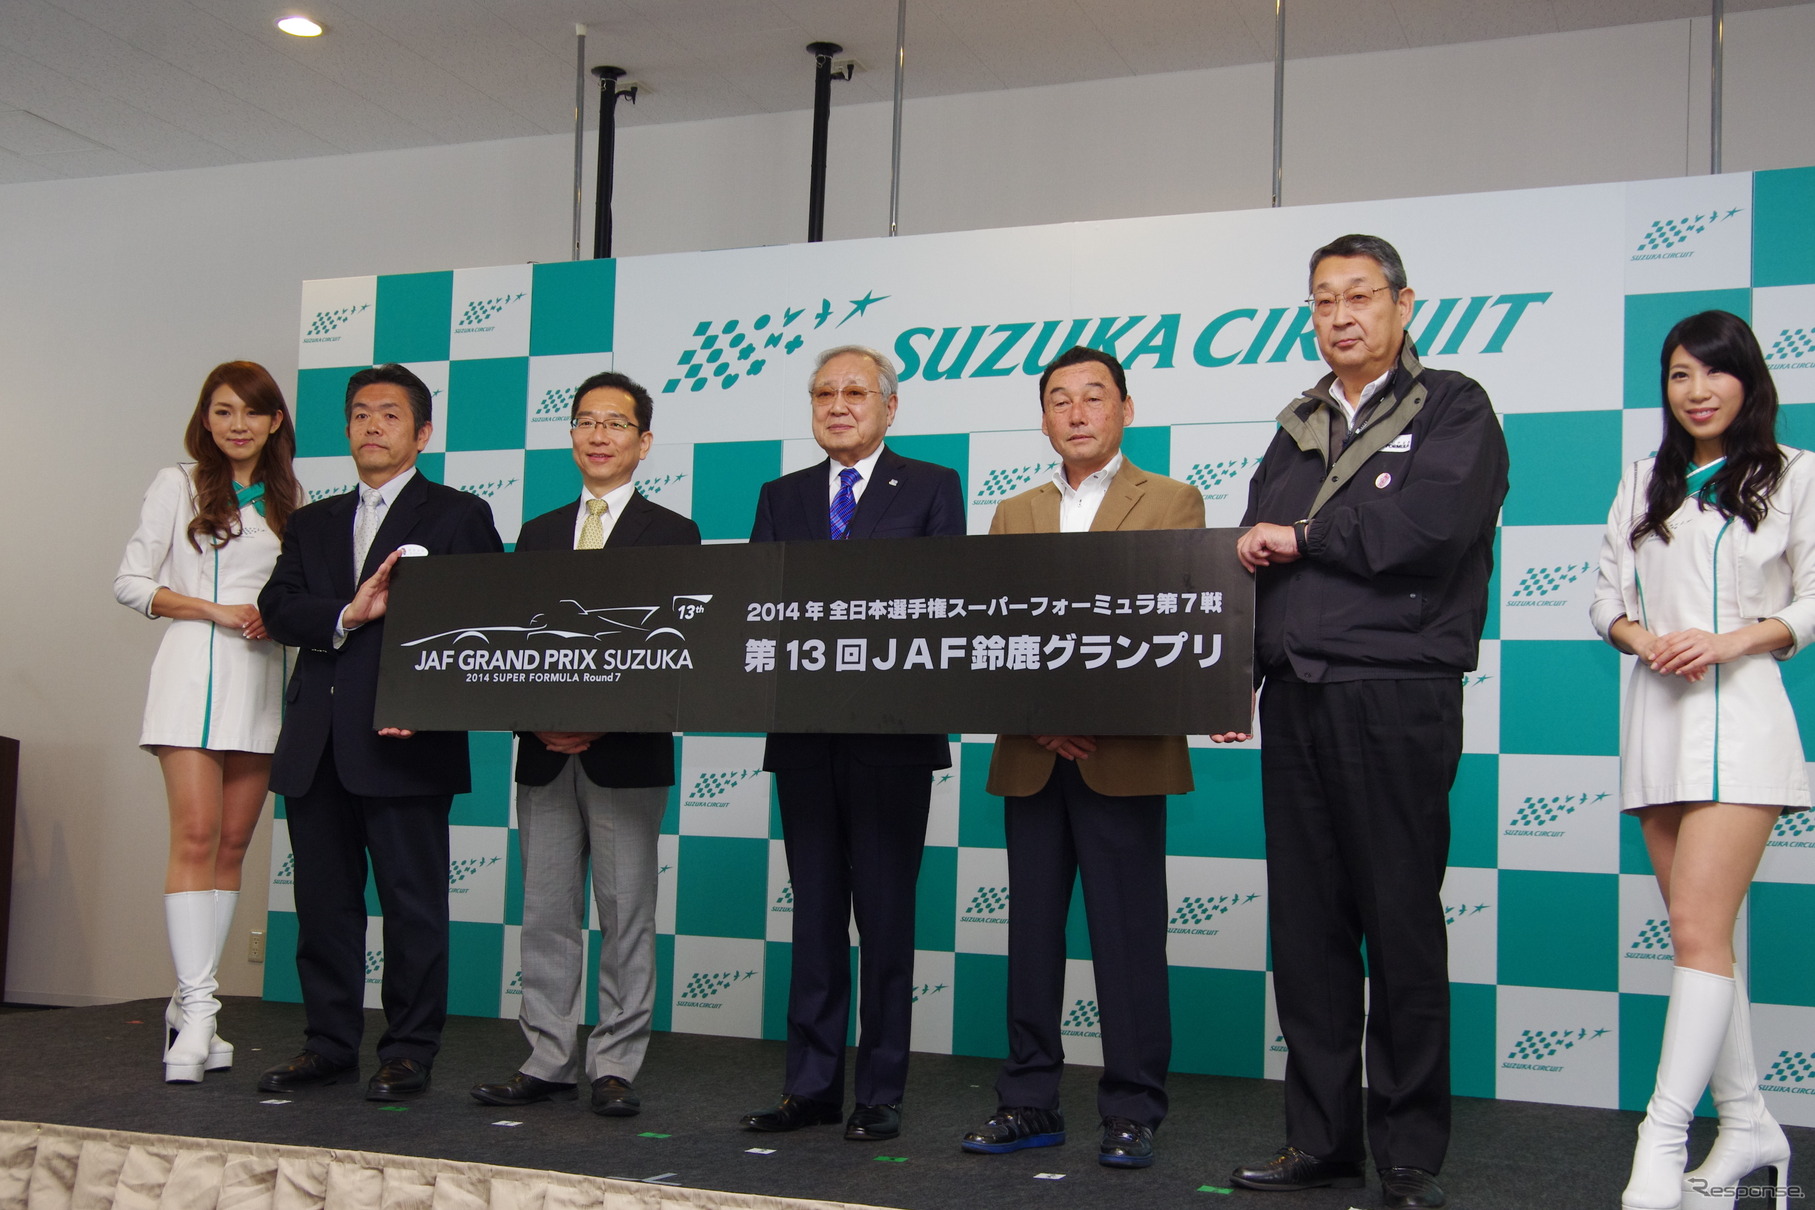 中嶋悟選手も加わって、今年もモータースポーツの普及、振興に尽力する決意が示された。